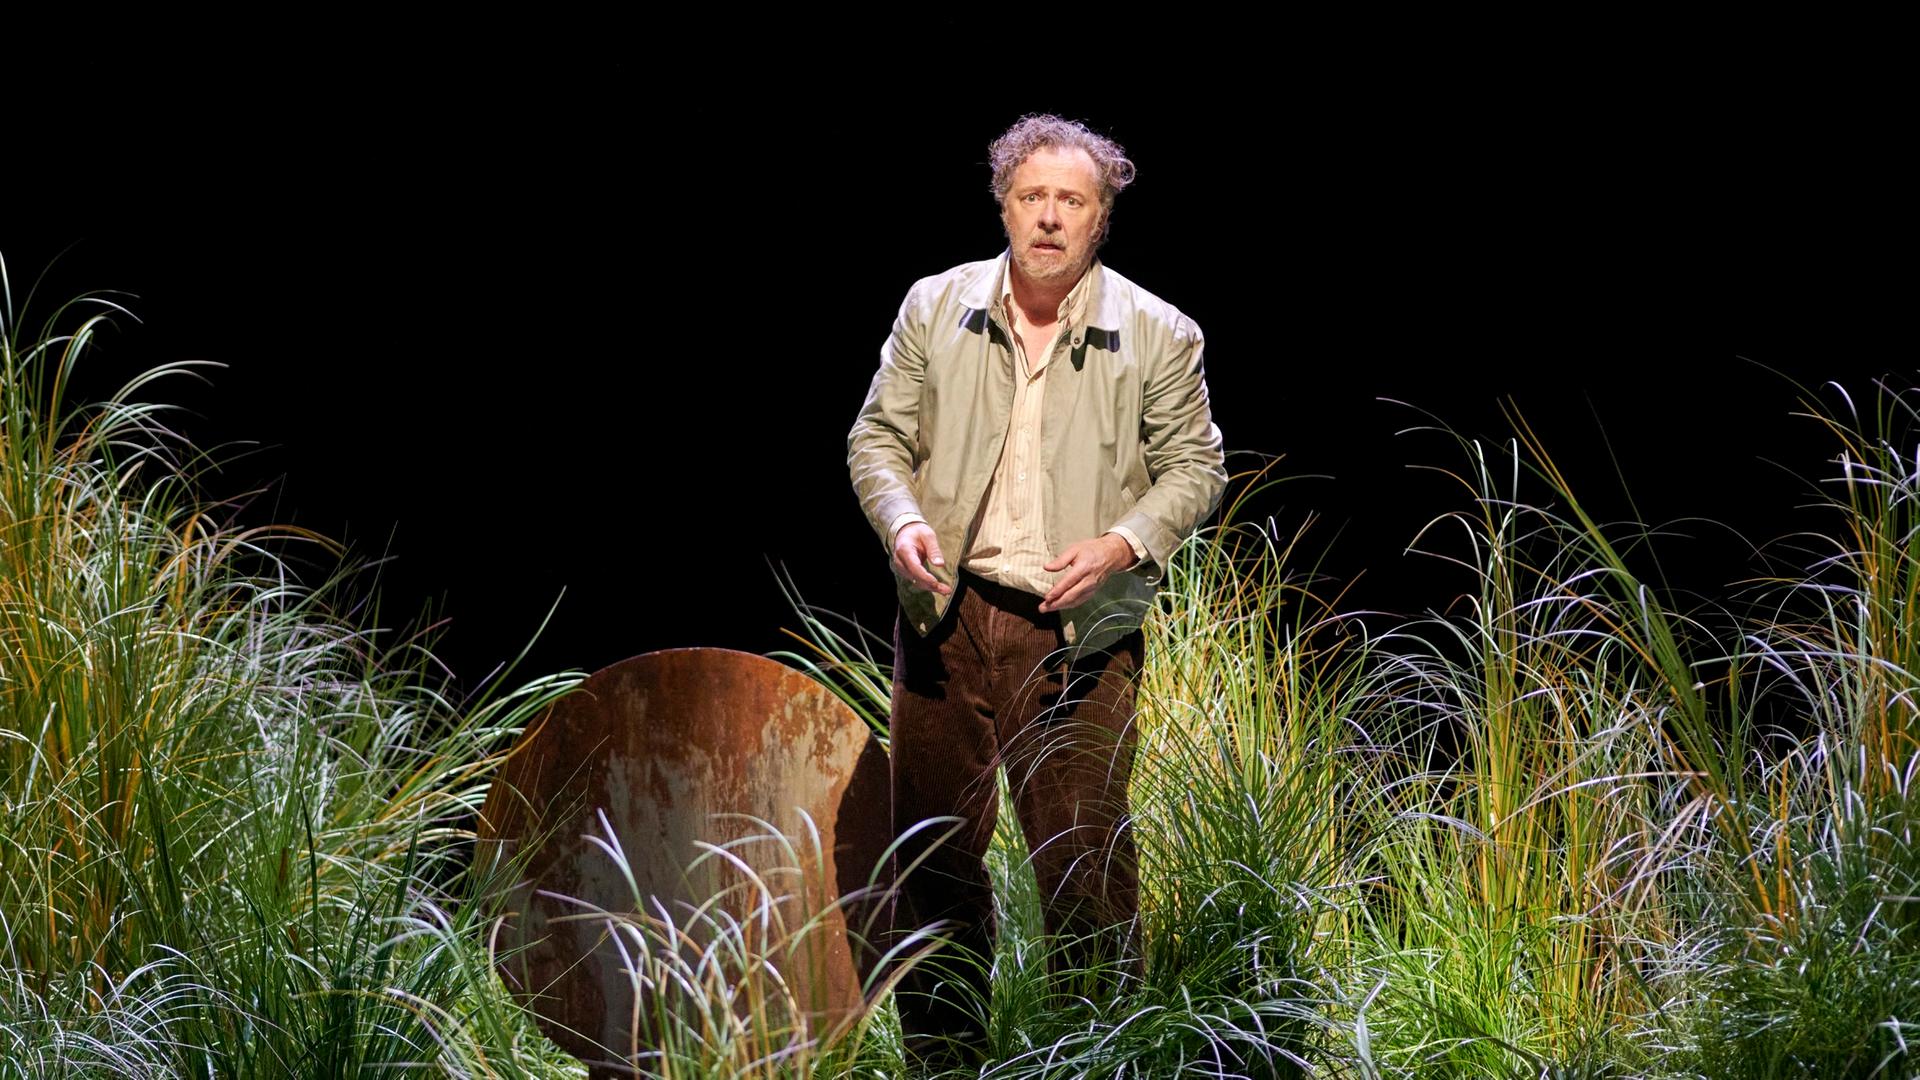 Ein Mann mit grauem, zerzaustem Haar steht auf einer Bühne. Er ist umgeben von hohem Gras und guck verwirrt. Er träge eine beige Jacke. 